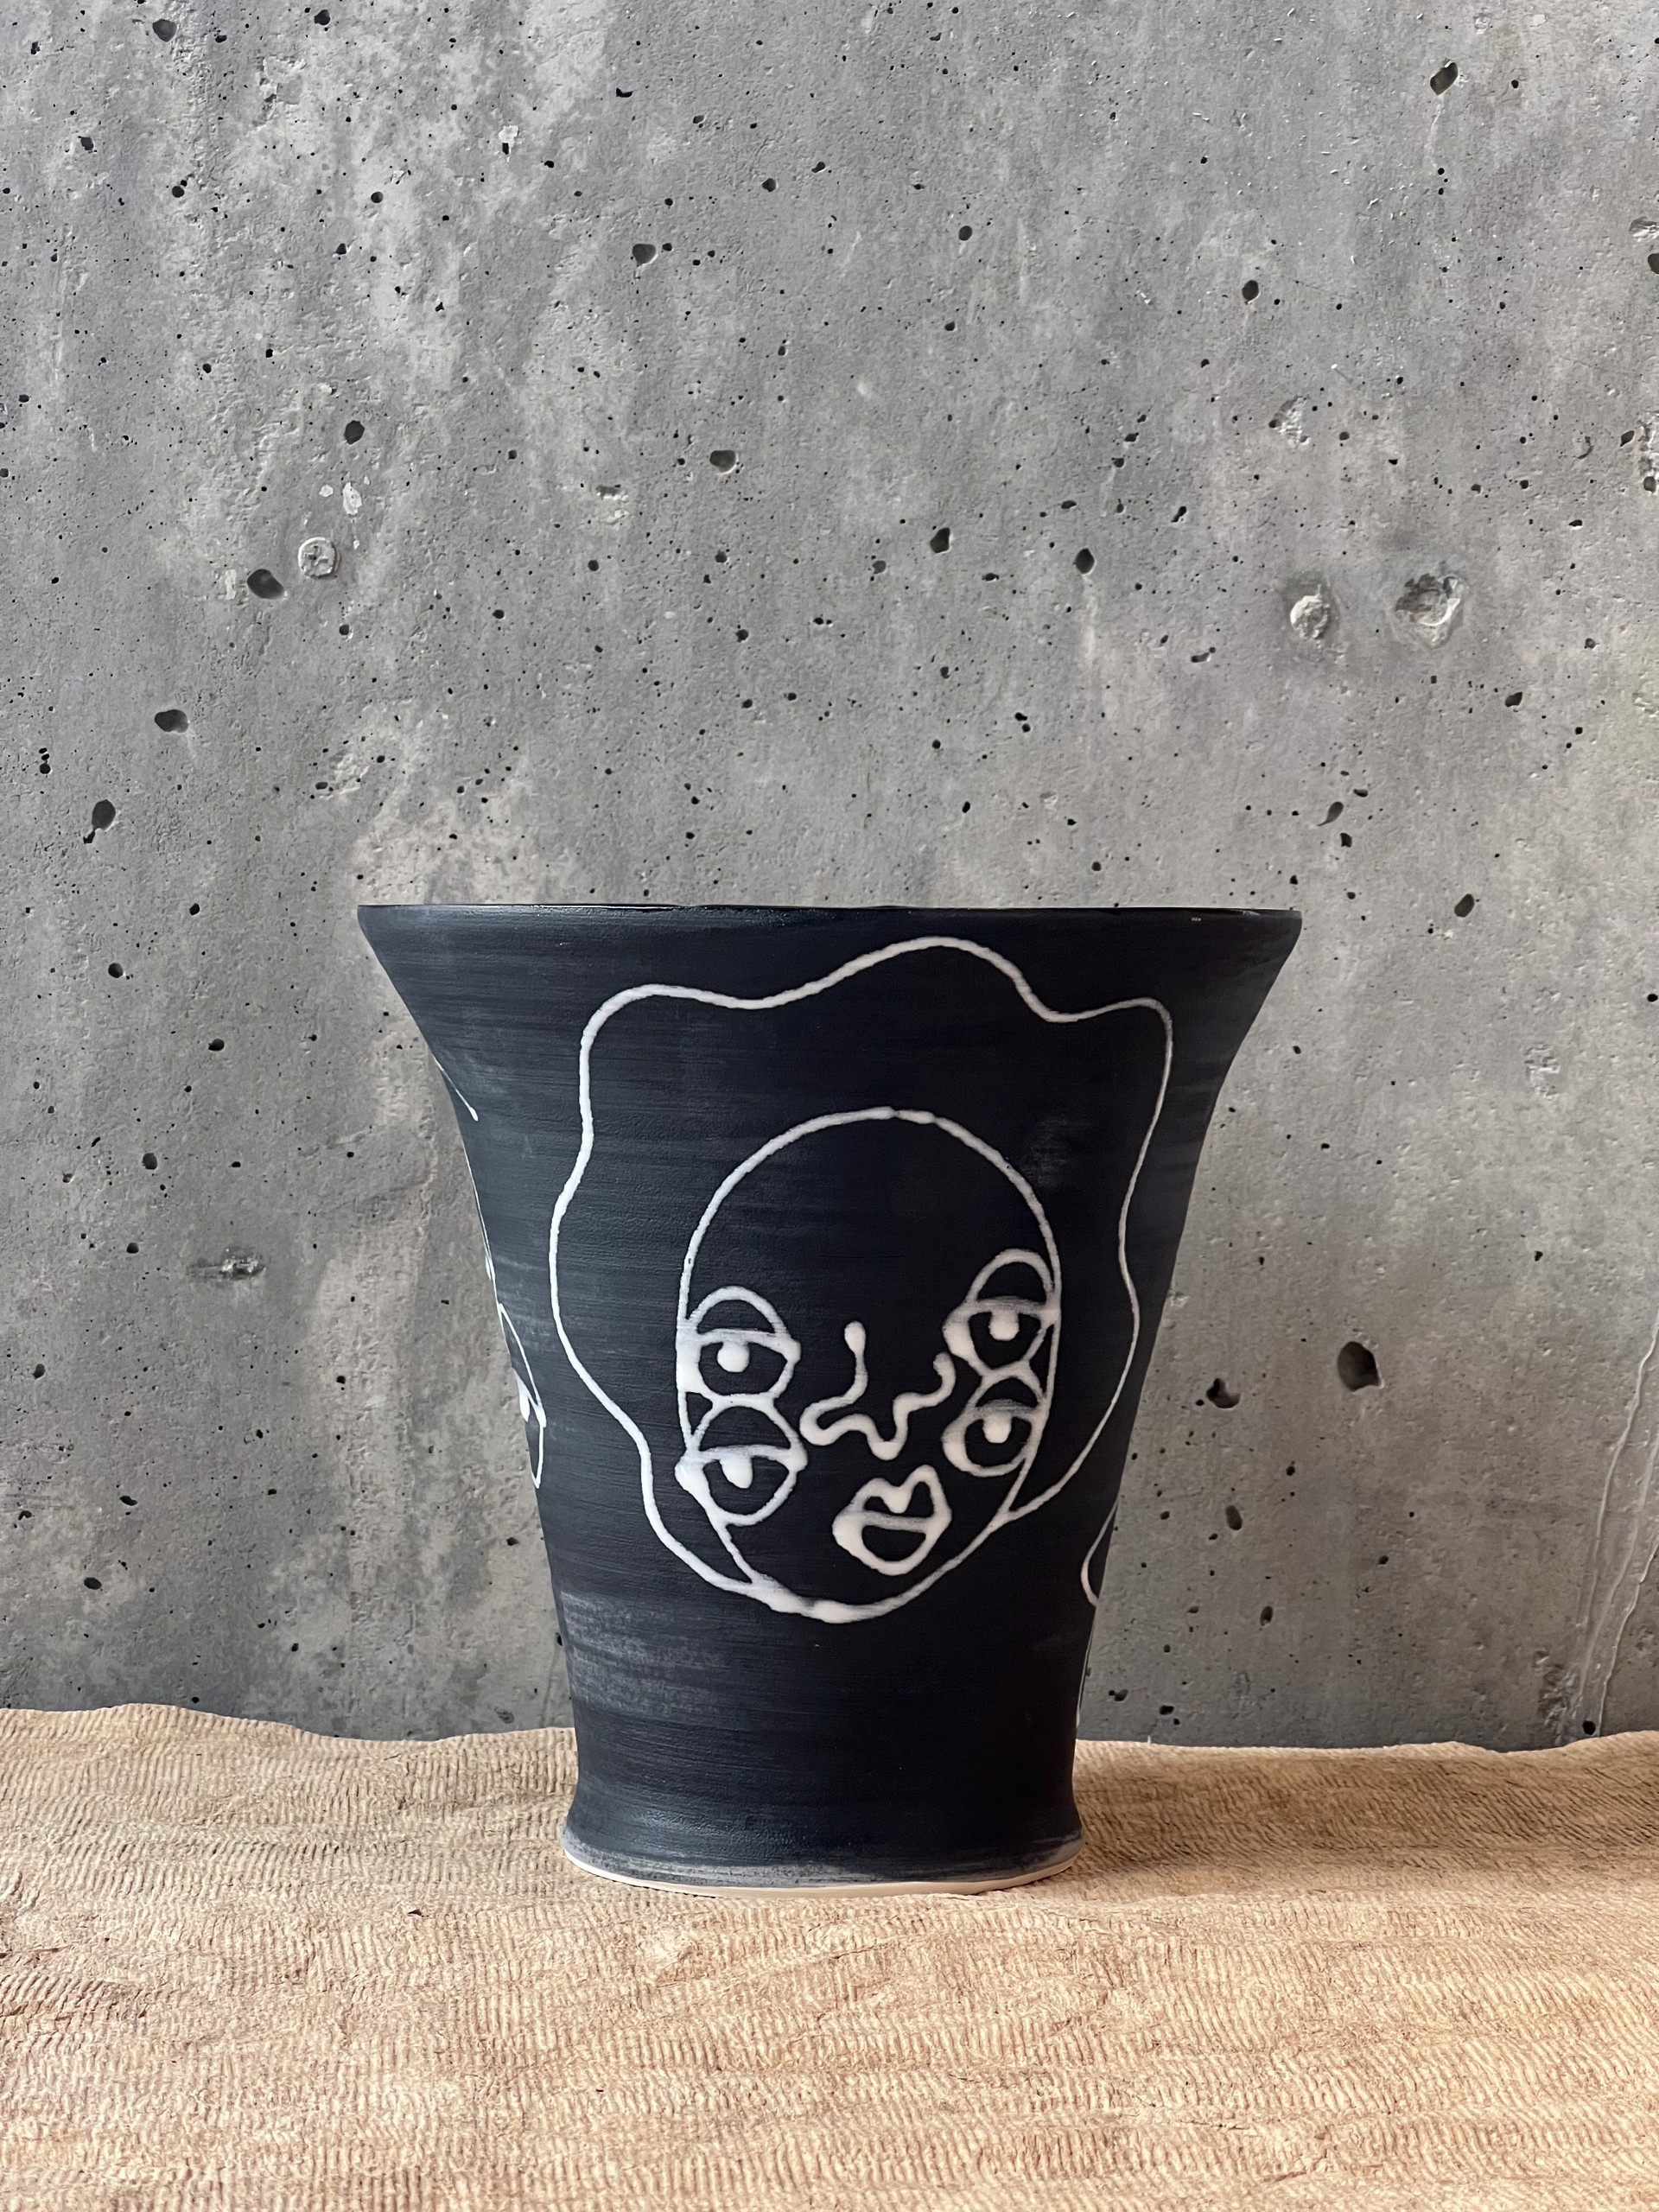 Lady Hummel Black Vase by Sarah Hummel Jones